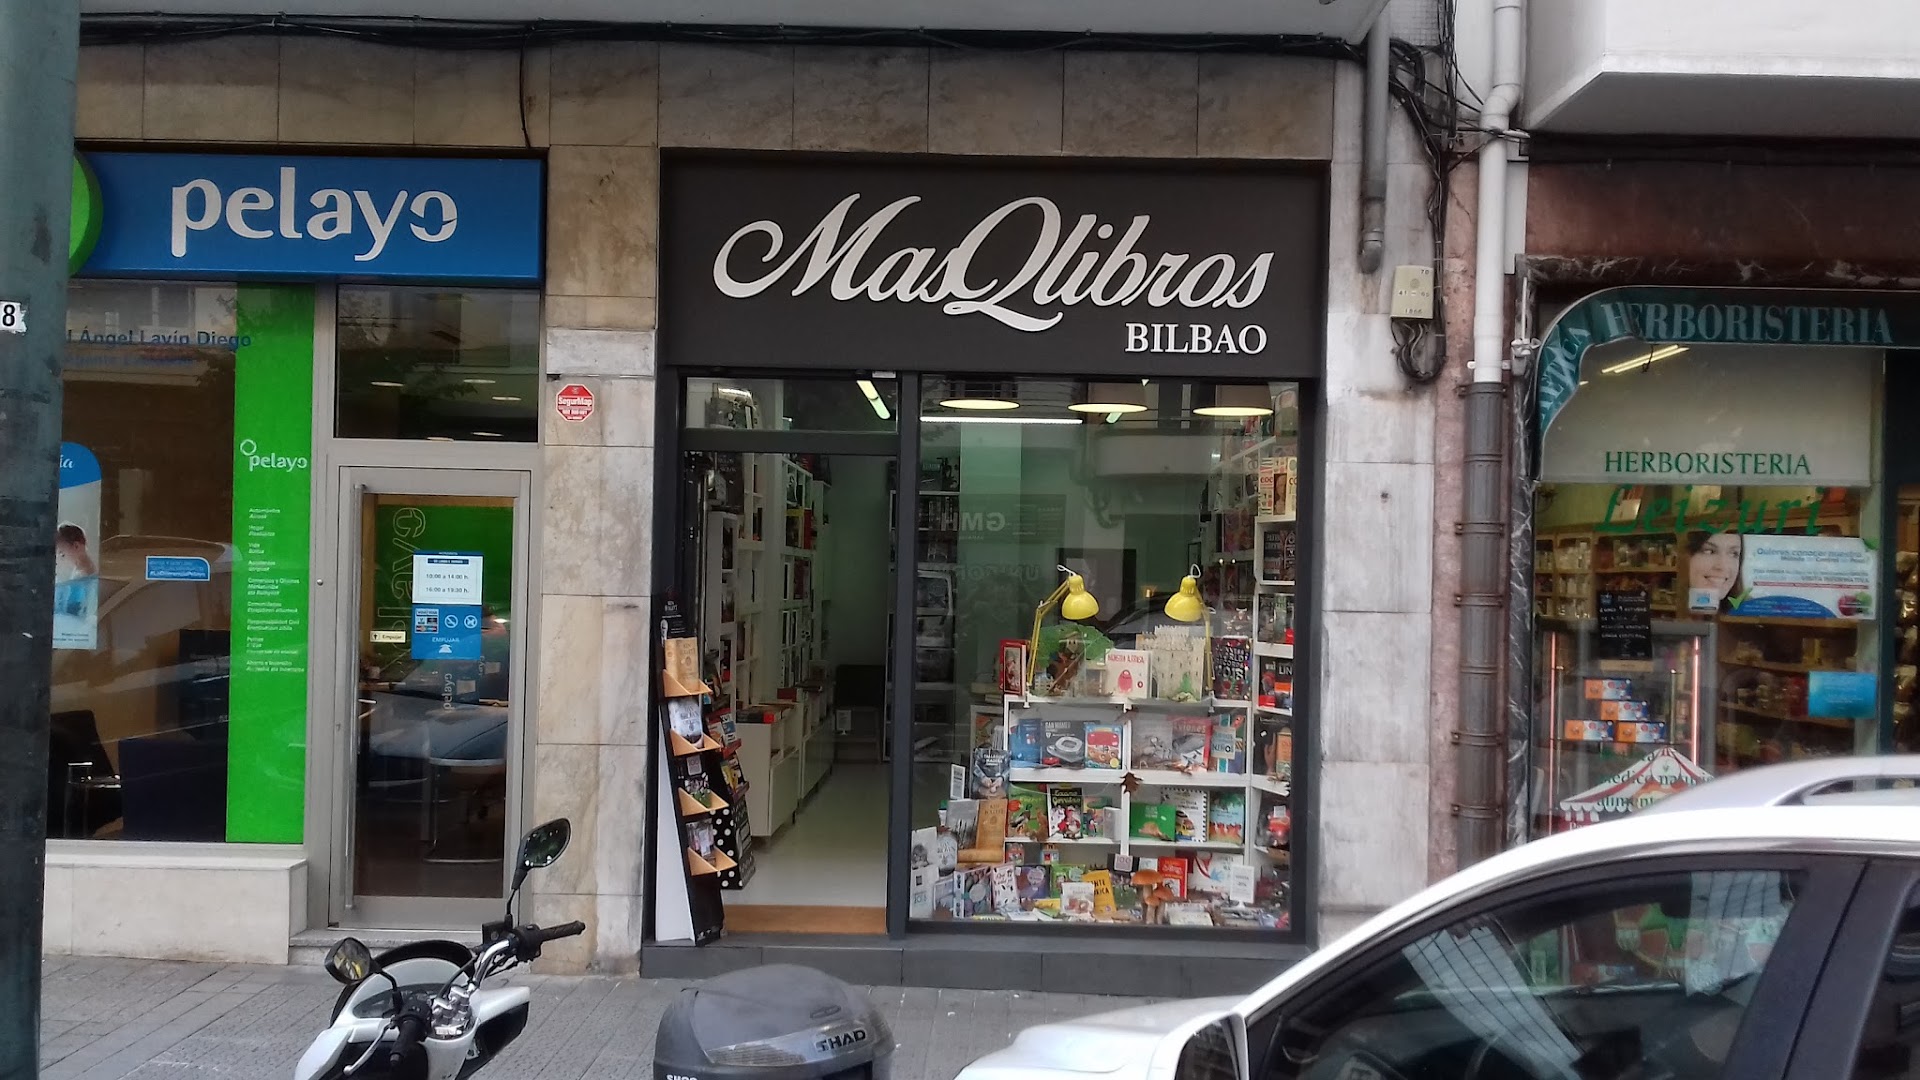 Libreria MasQlibros Bilbao